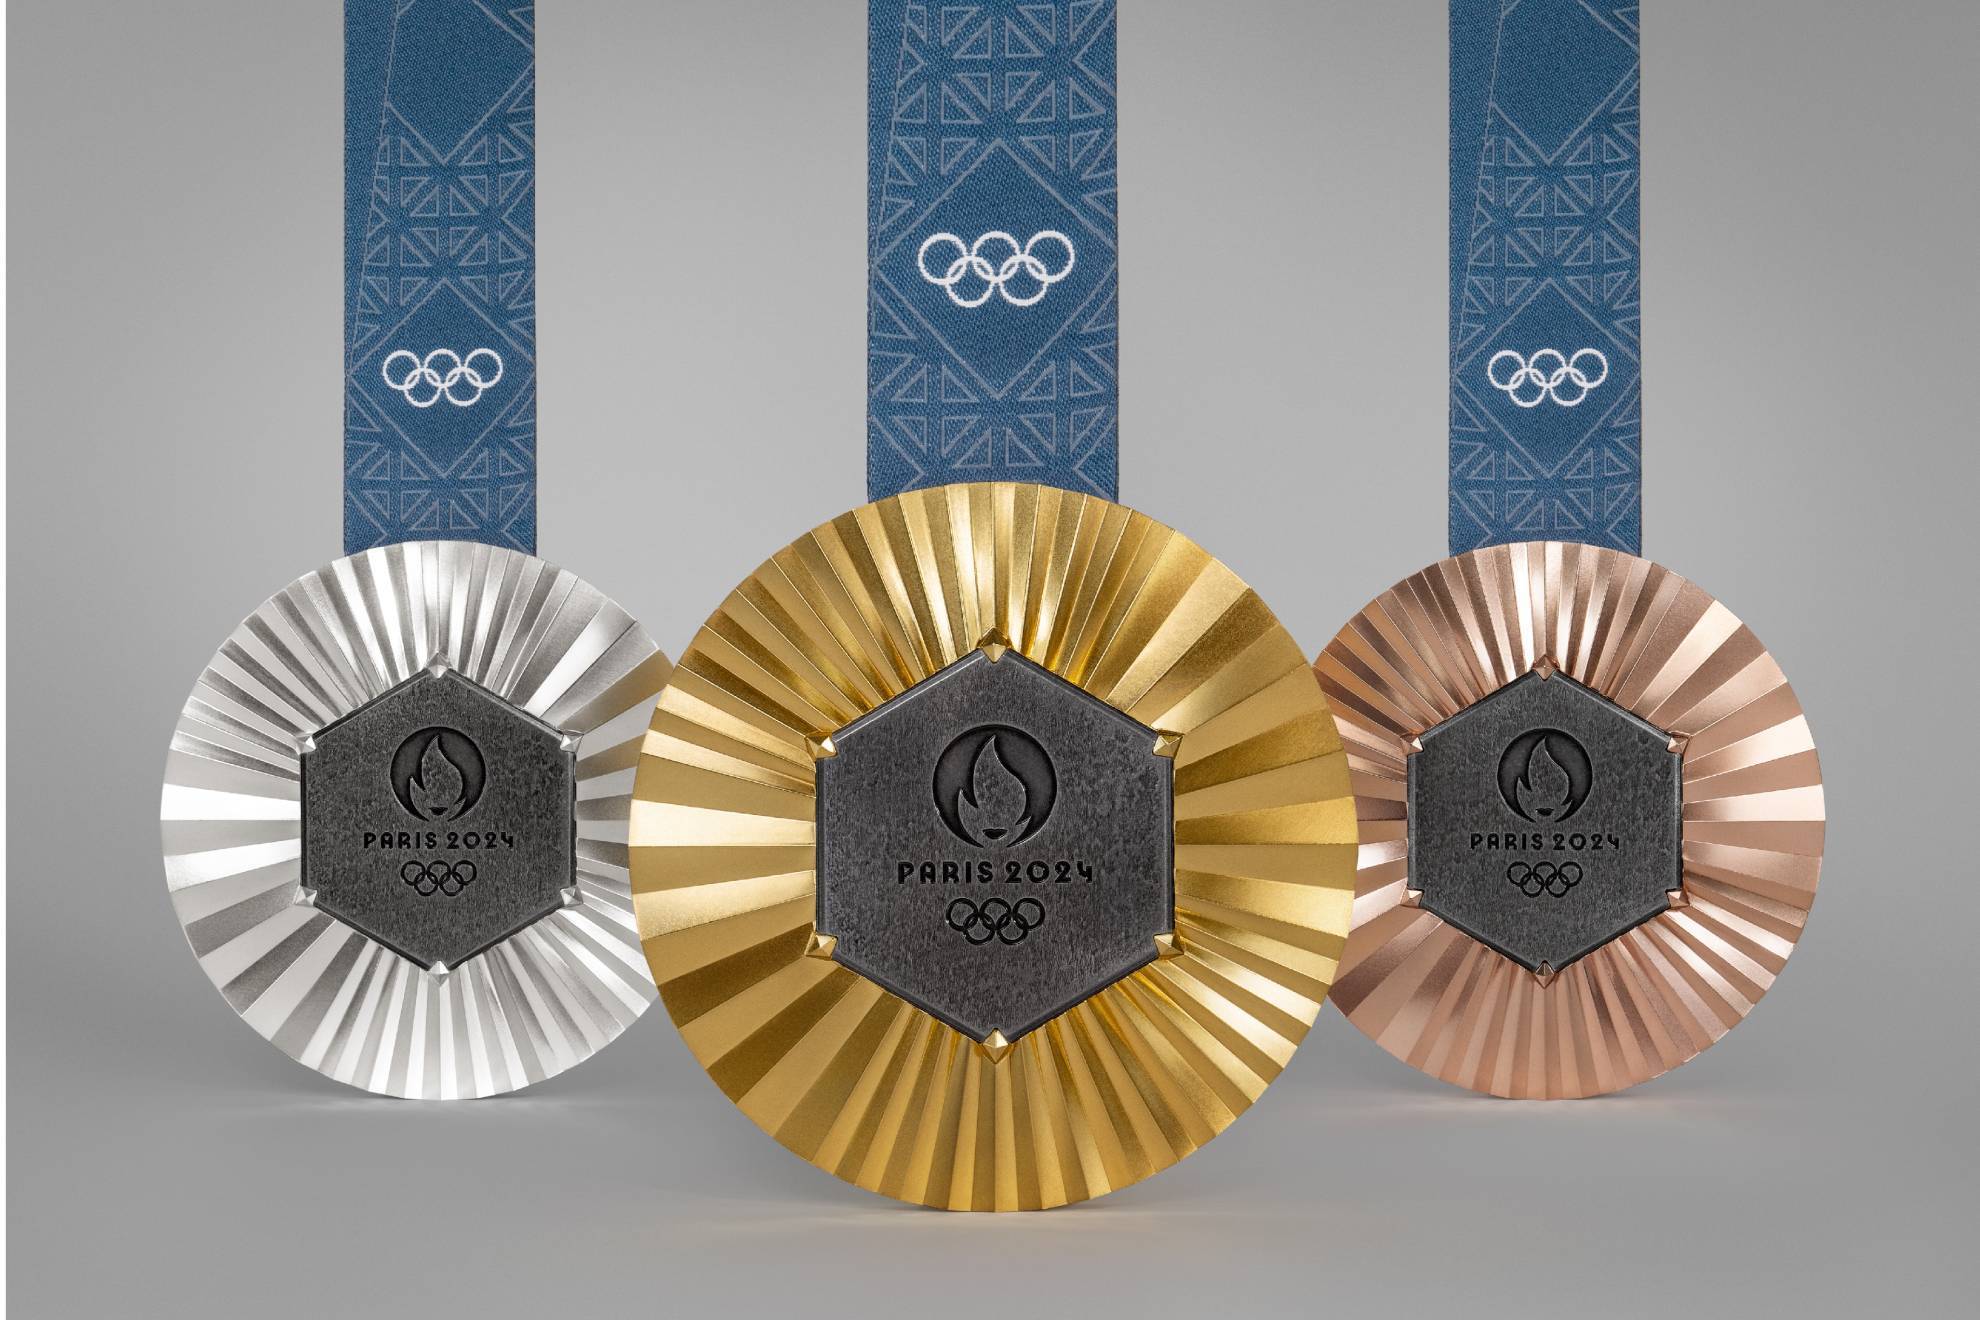 La medallas olmpicas lucen un poco de la historia de los juegos y de Paris 2024